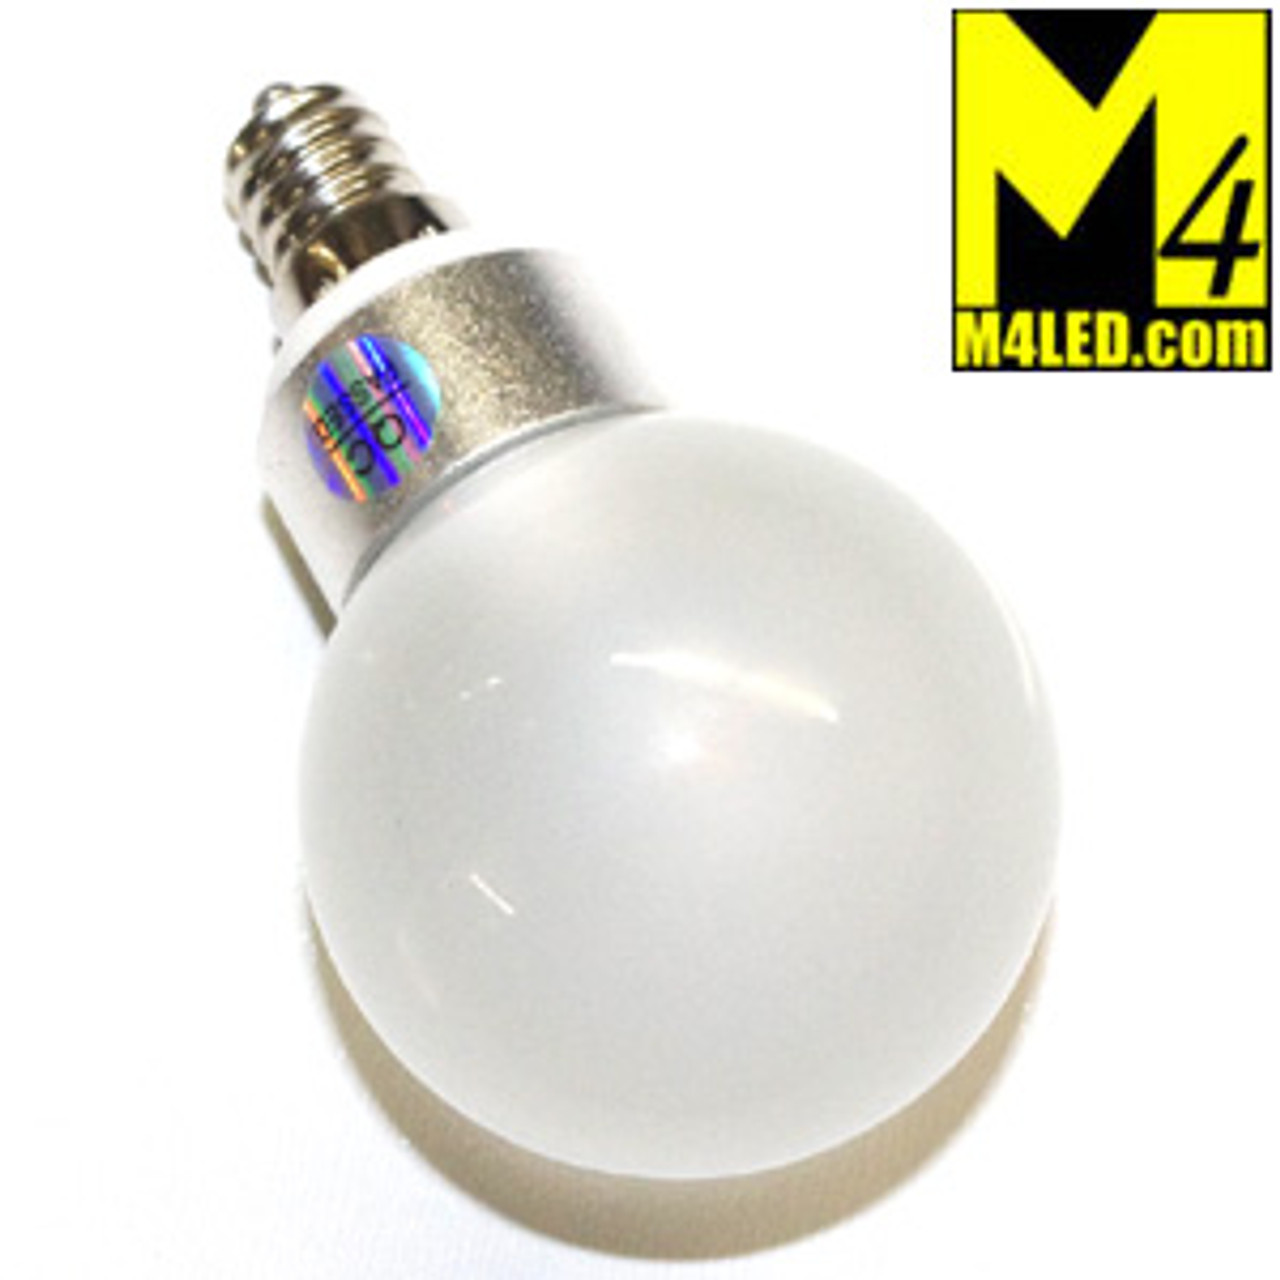 Screw in Vanity LED Globes